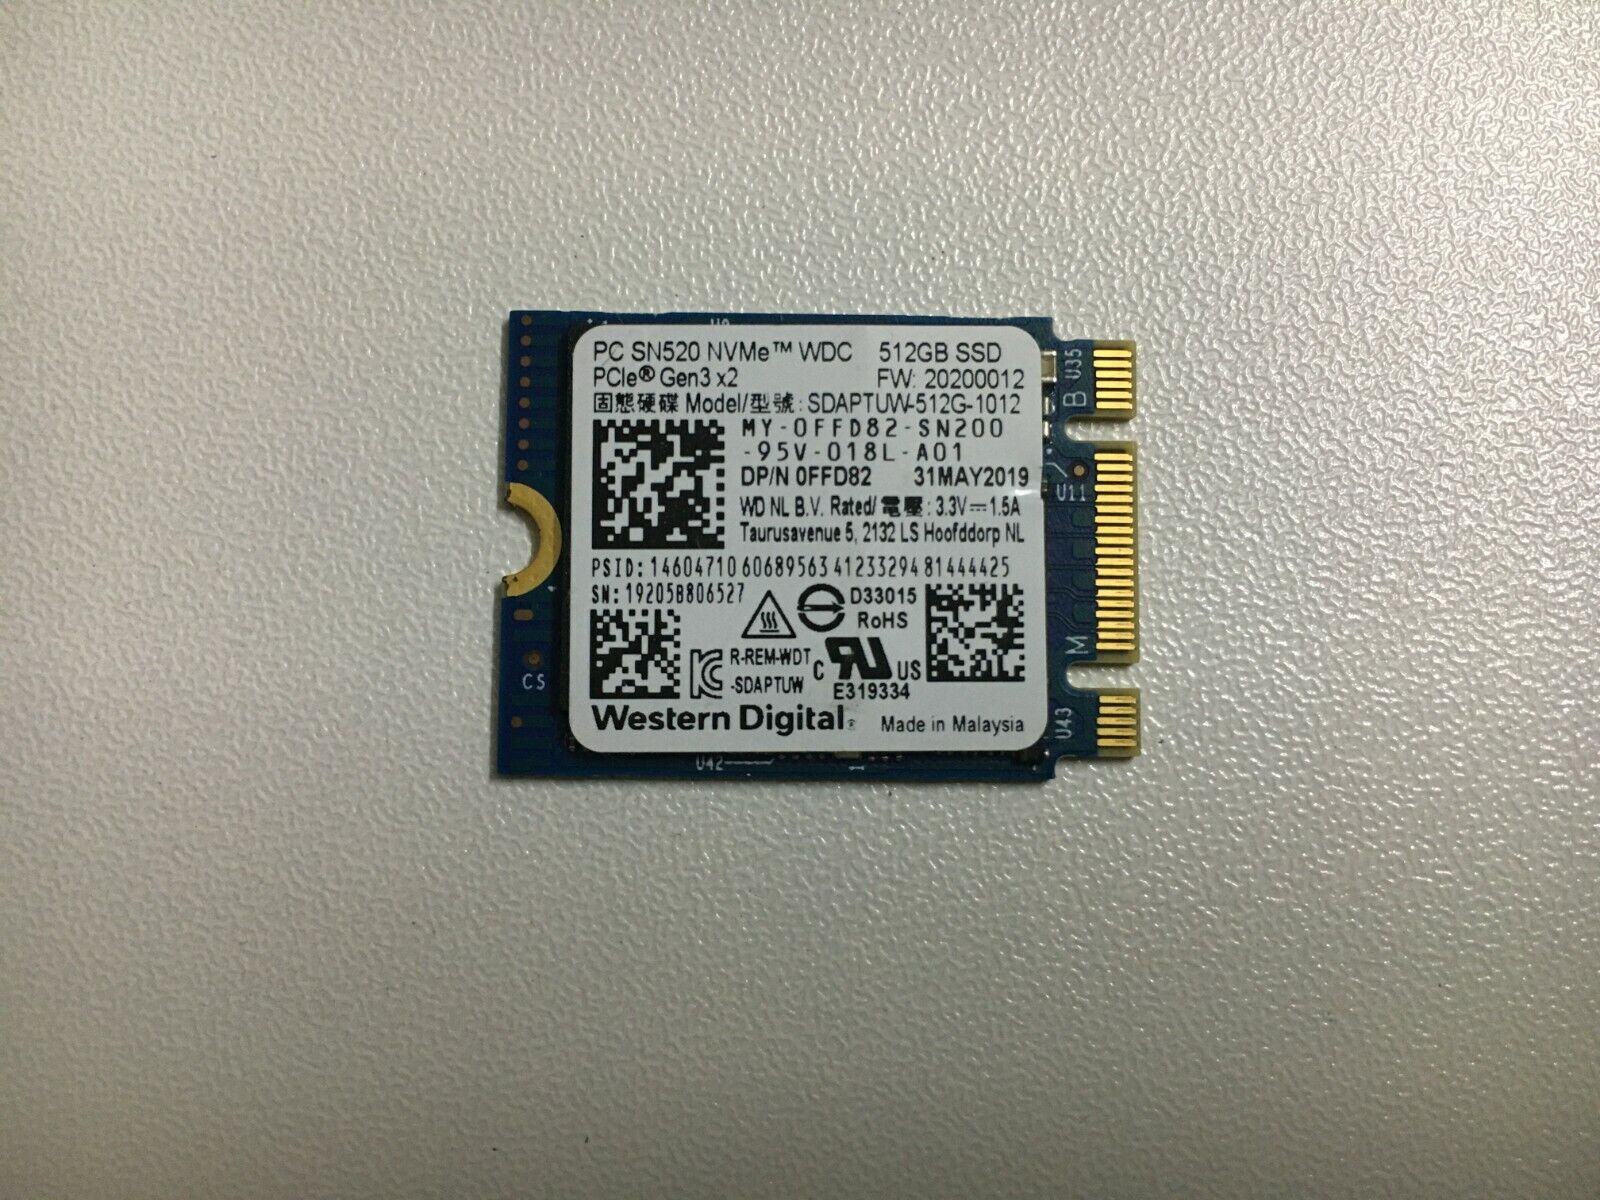 Western Digital PC SN520 NVMe  PCle Gen3x2 SSD SDAPTUW-512G-1012 512GB M.2 2230